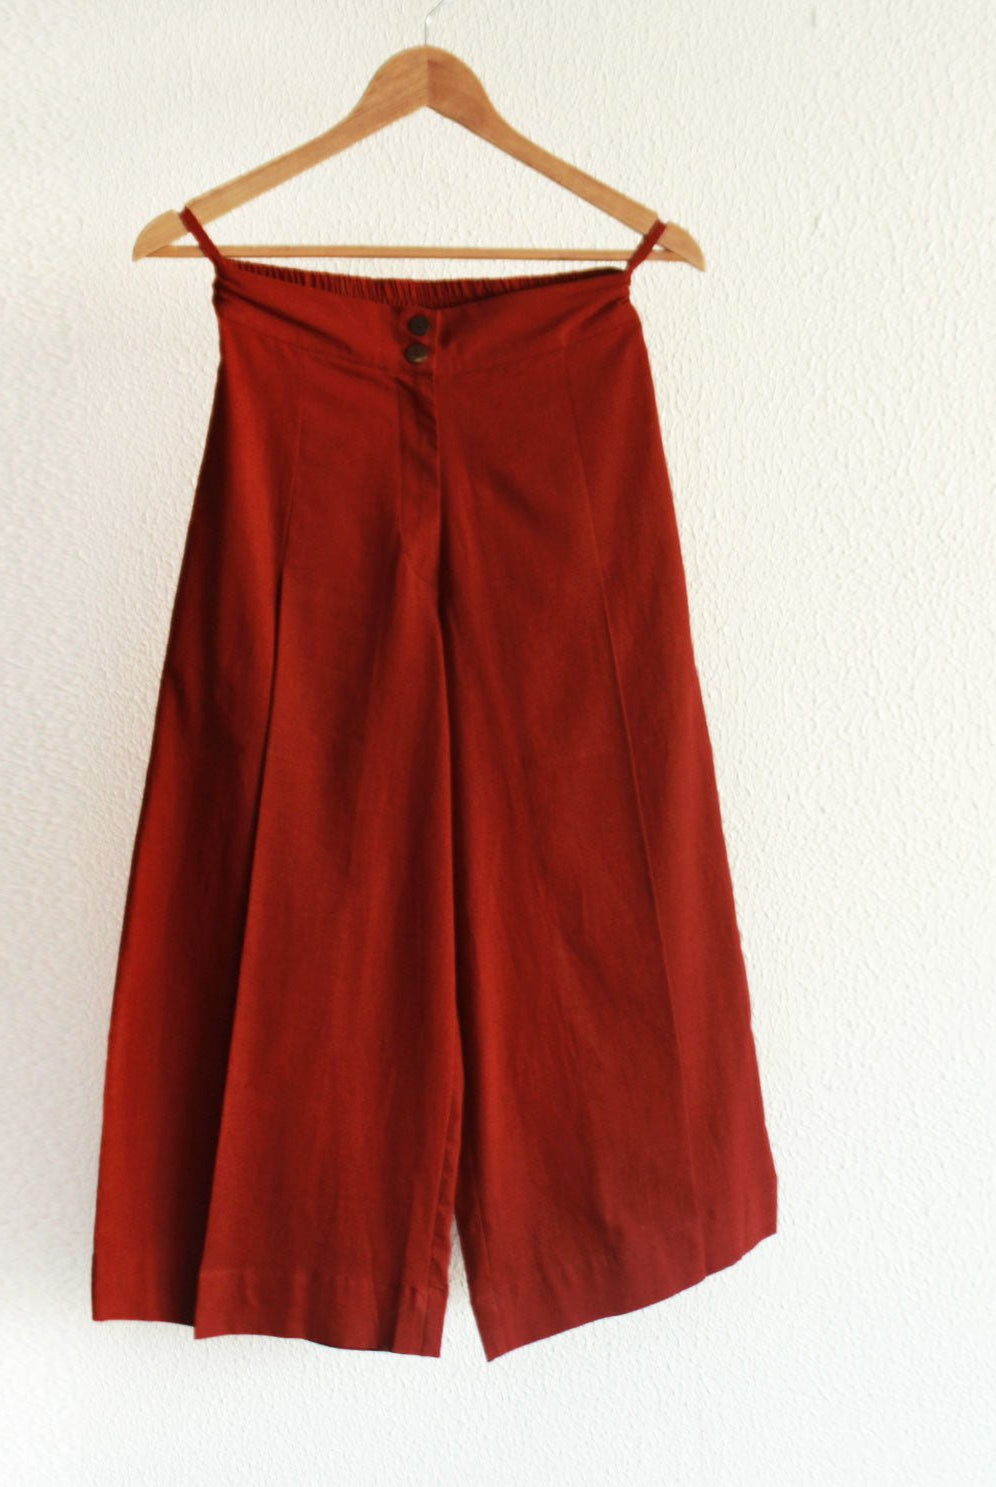 Pleated Cherry Red Pants - CiceroniRias Jaipur